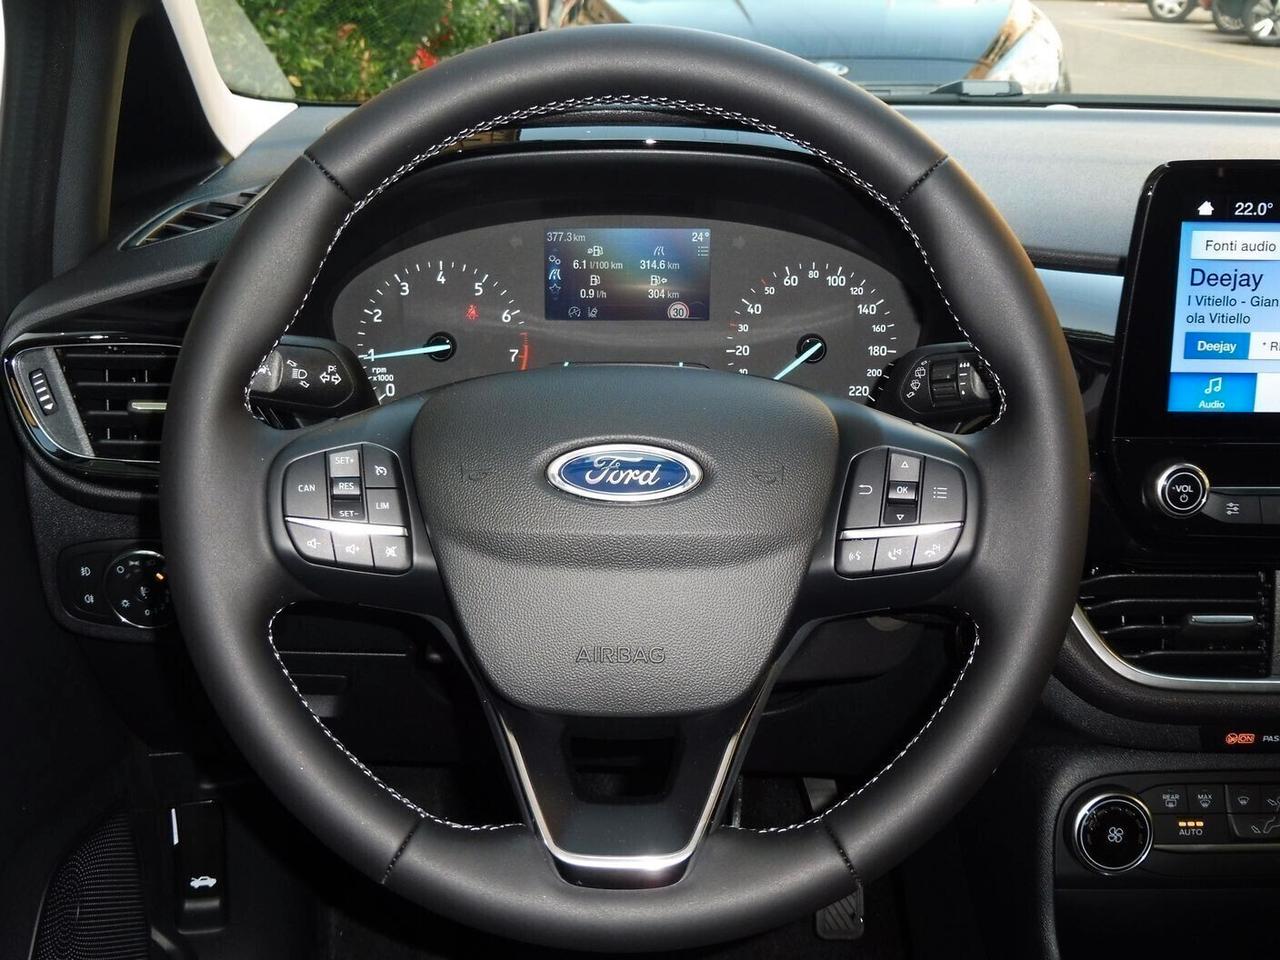 Ford Fiesta 1.1 5P Titanium *NUOVA* NO VINCOLI FINANZIAMENTO